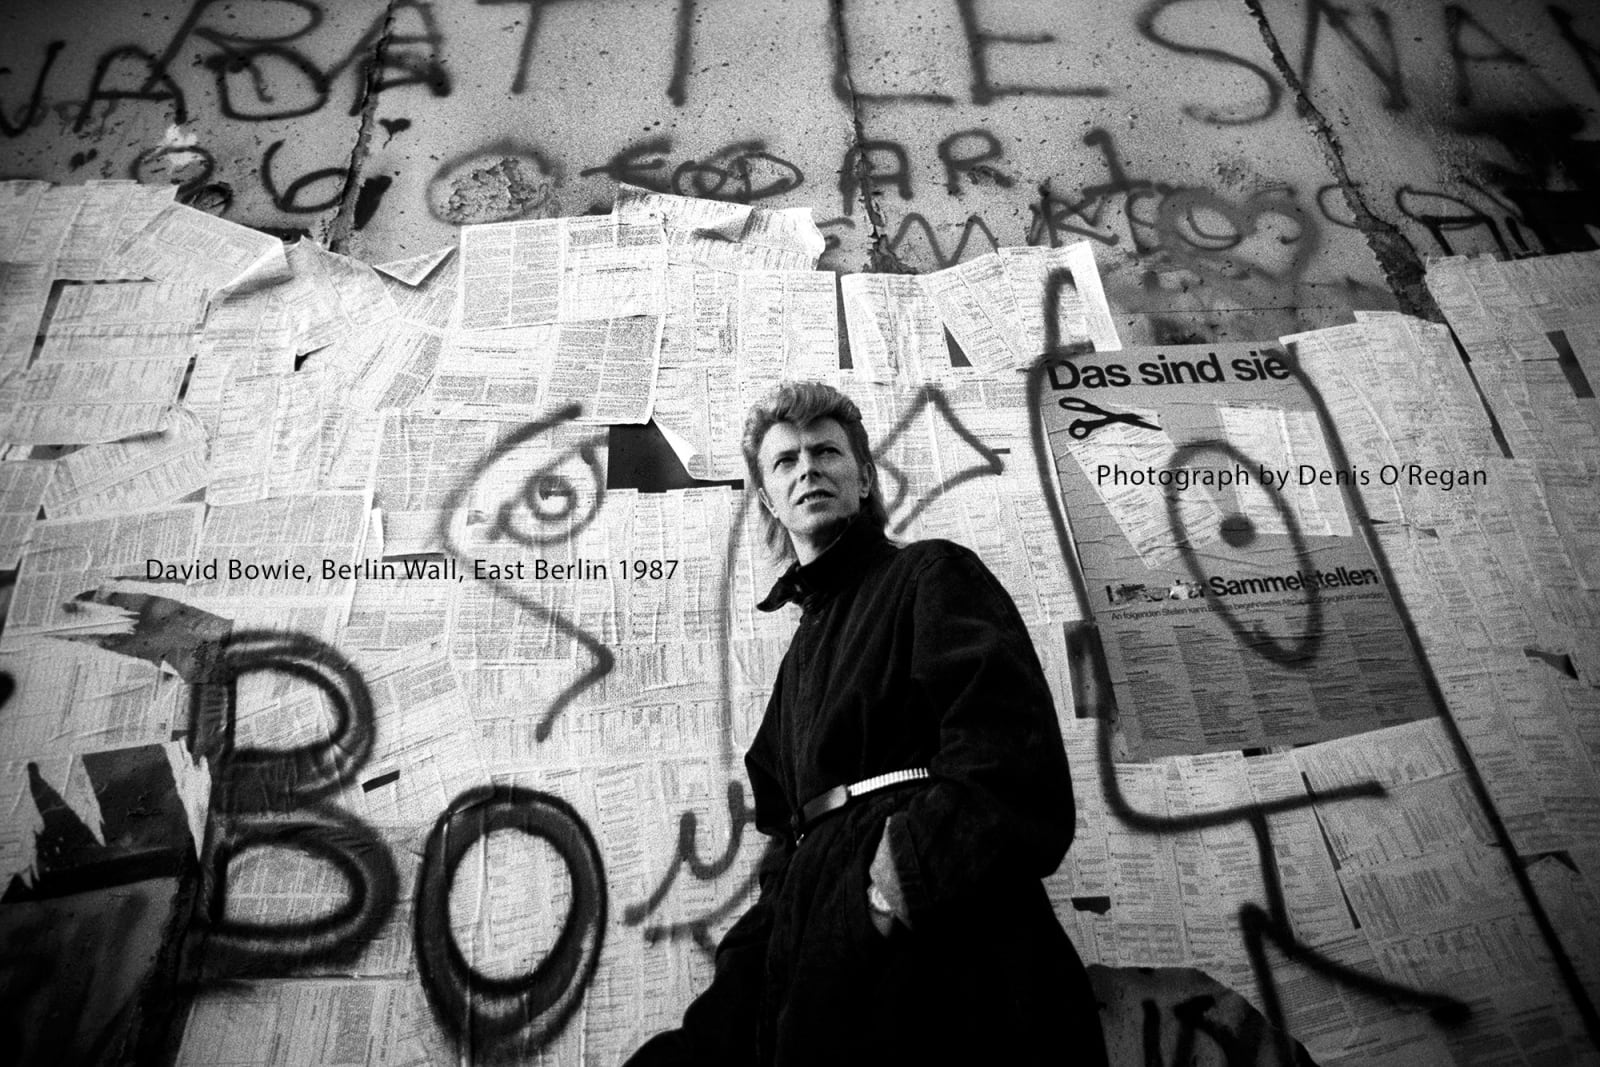 DAVID BOWIE, David Bowie (East) Berlin Wall, 1987